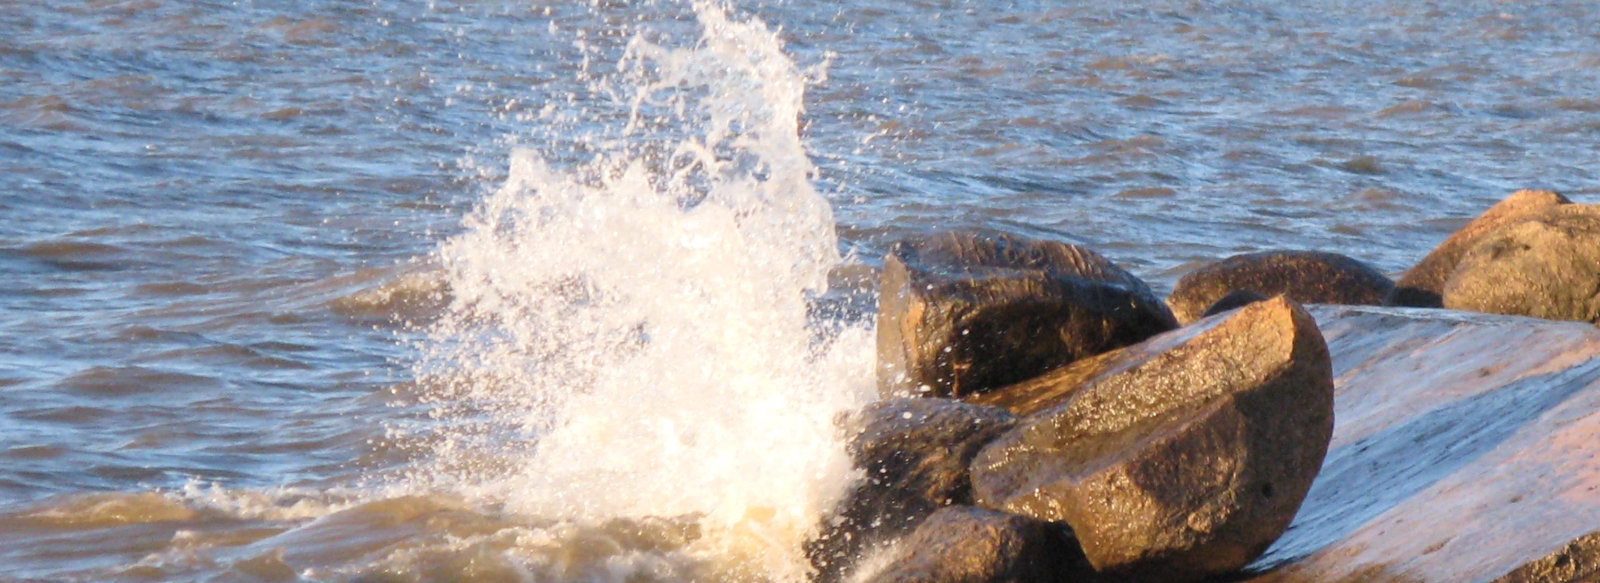 Water on a rocky shore in brock